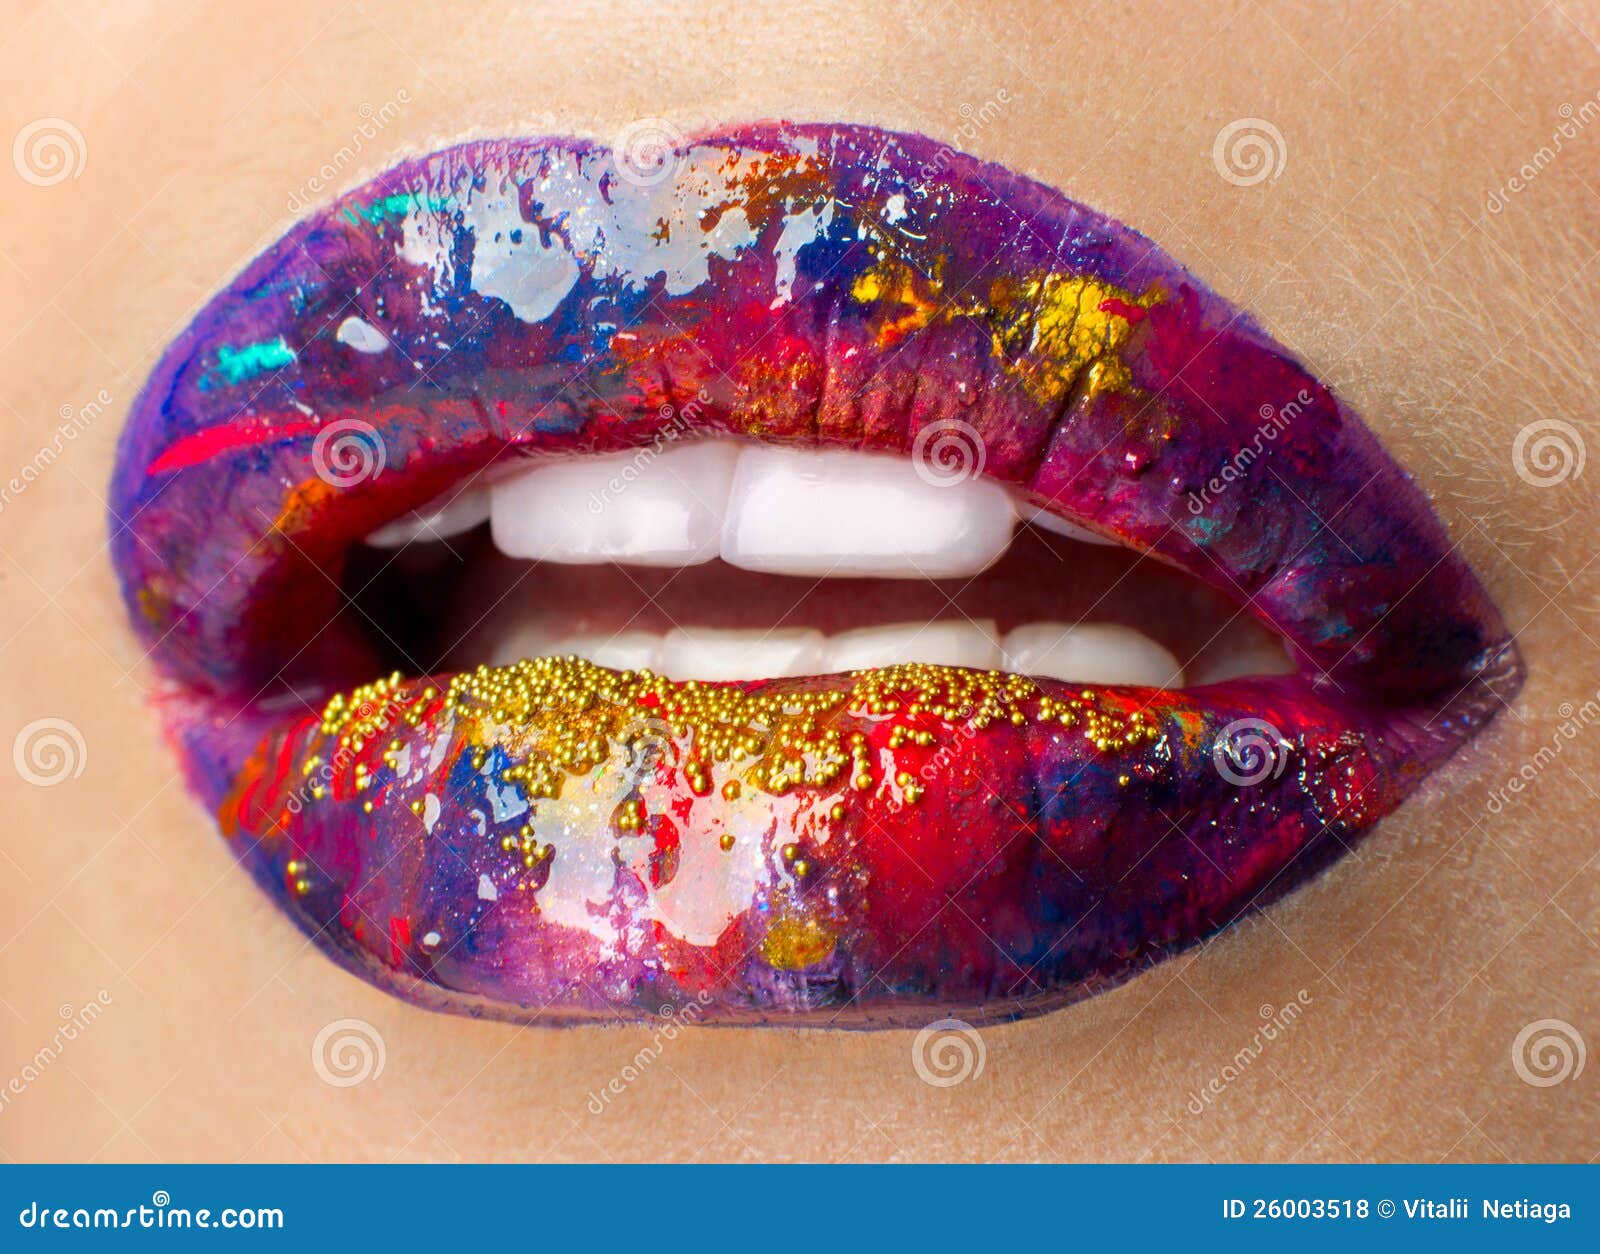 lips art make-up